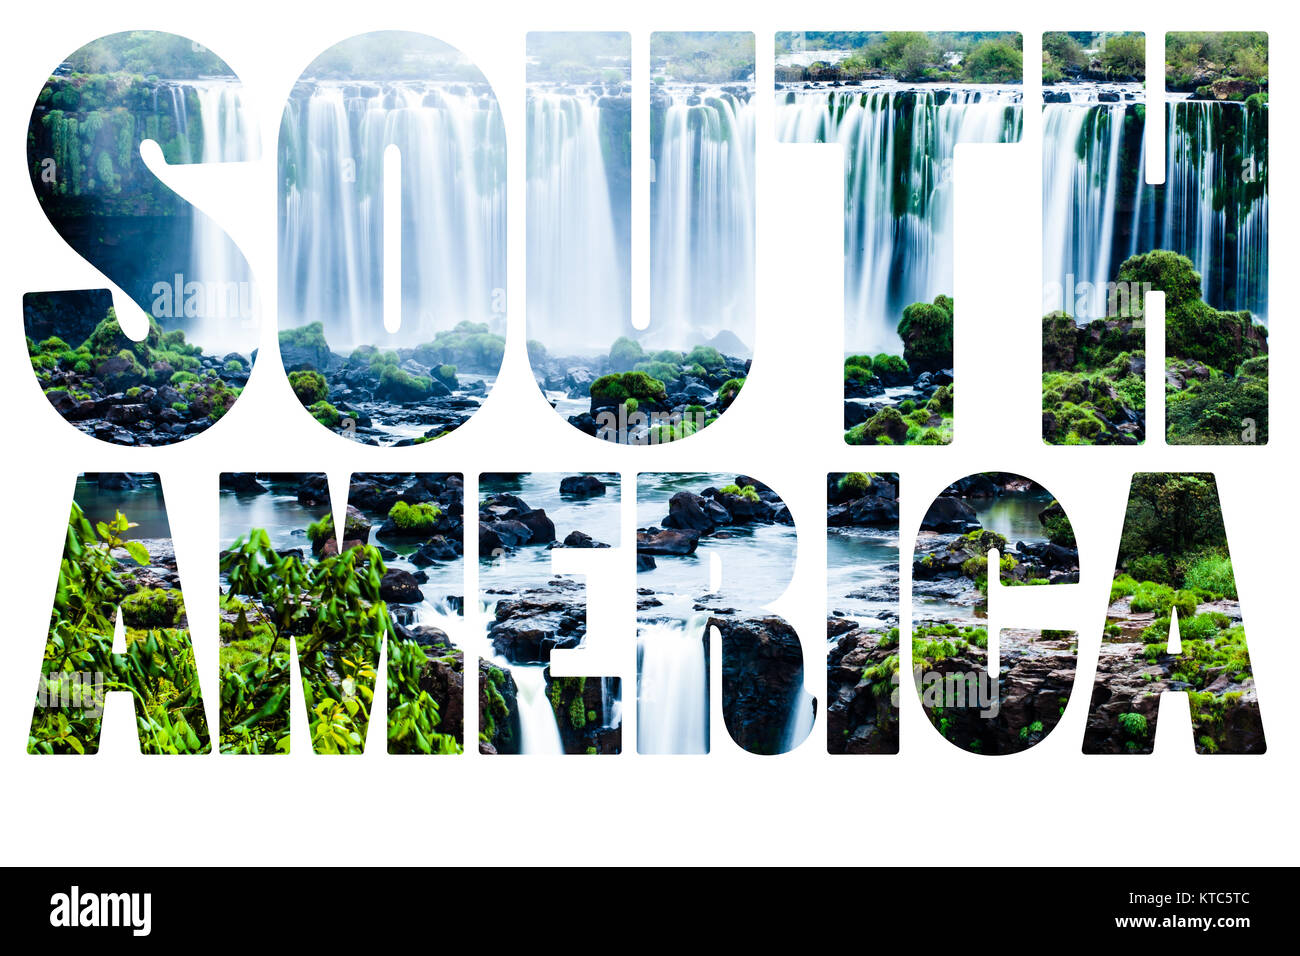 Wort Südamerika - Iguaçu-Wasserfälle, die grössten Wasserfälle der Welt Stockfoto